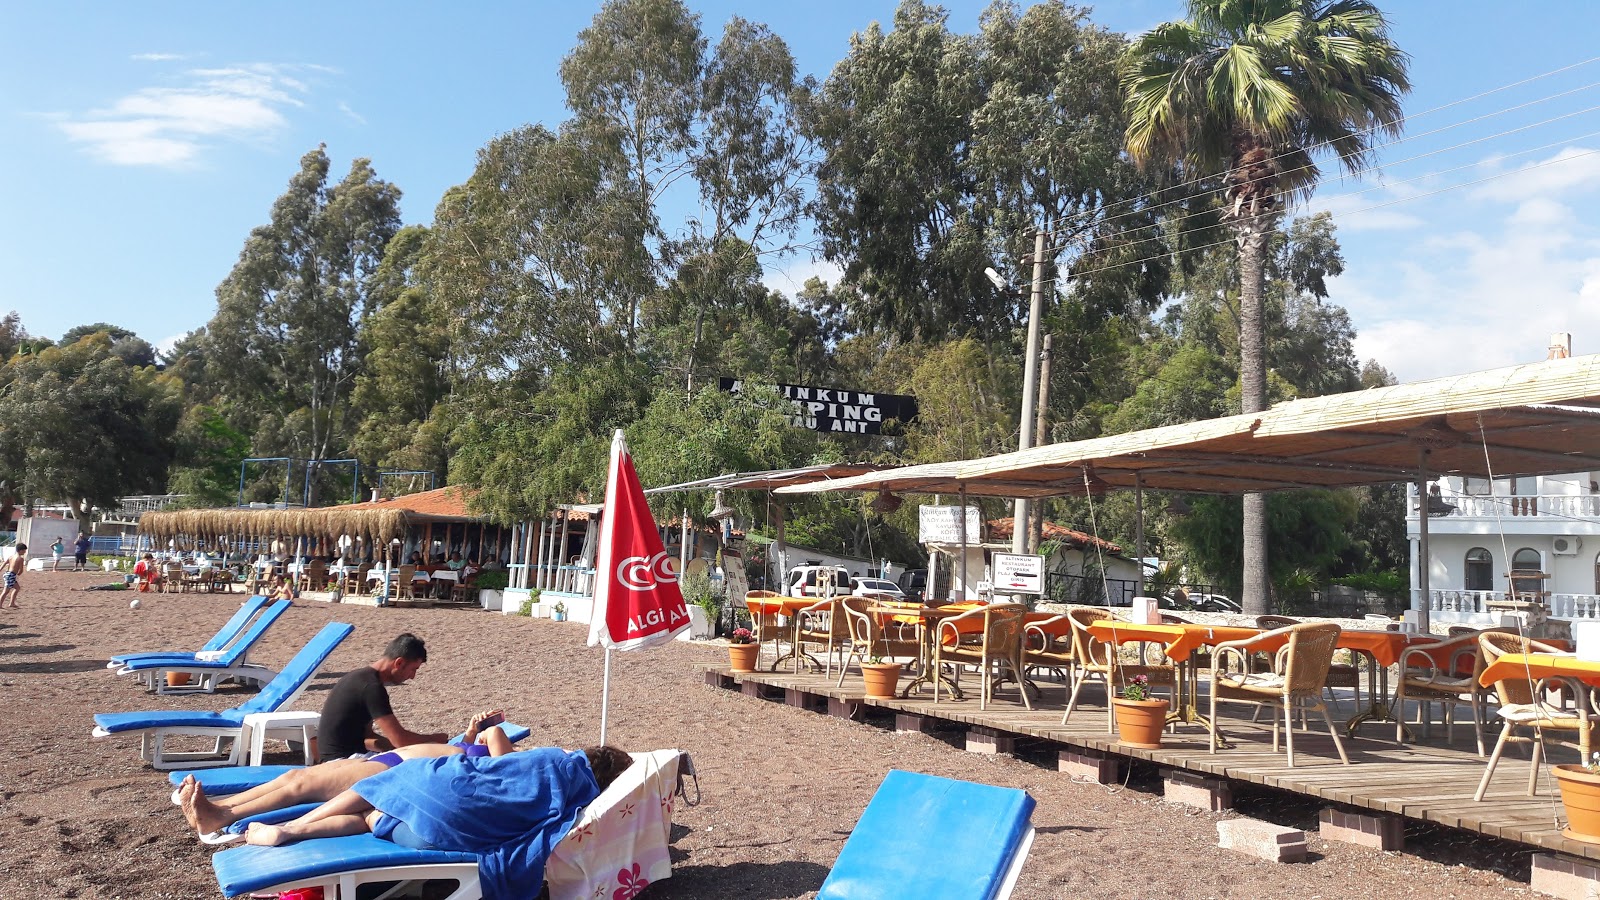 Foto de Erine beach Club - lugar popular entre los conocedores del relax